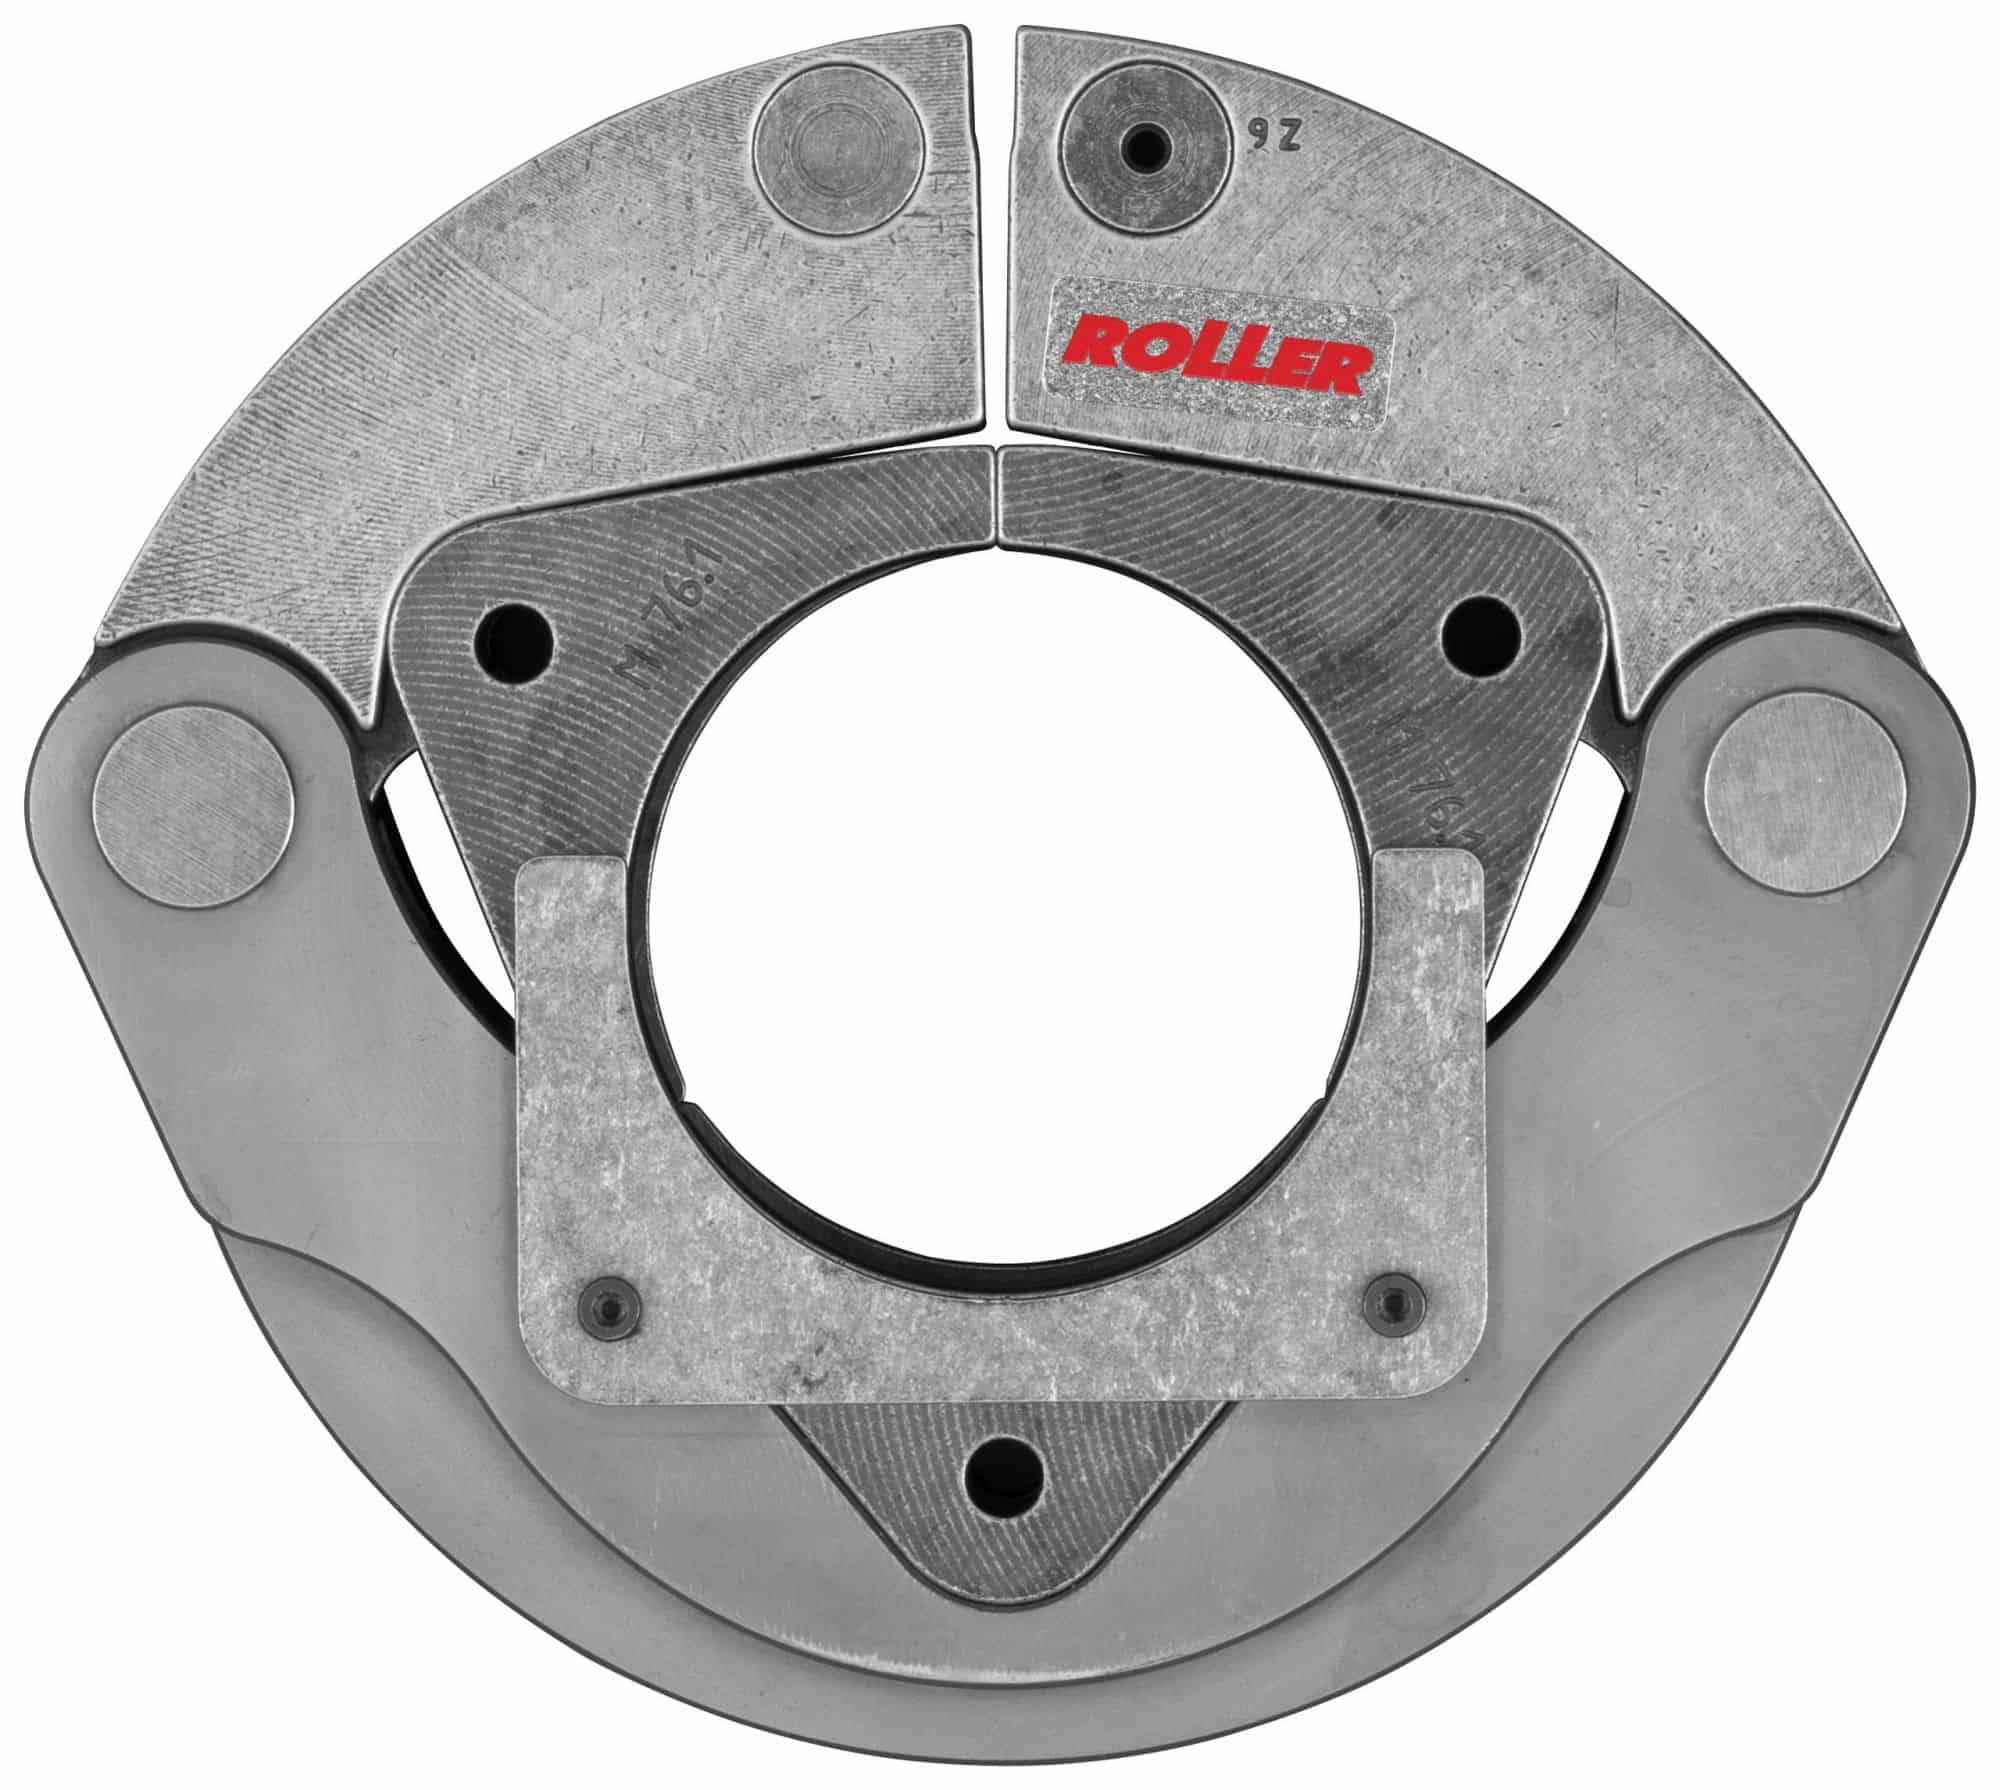 ROLLER'S Pressringe XL Kontur M